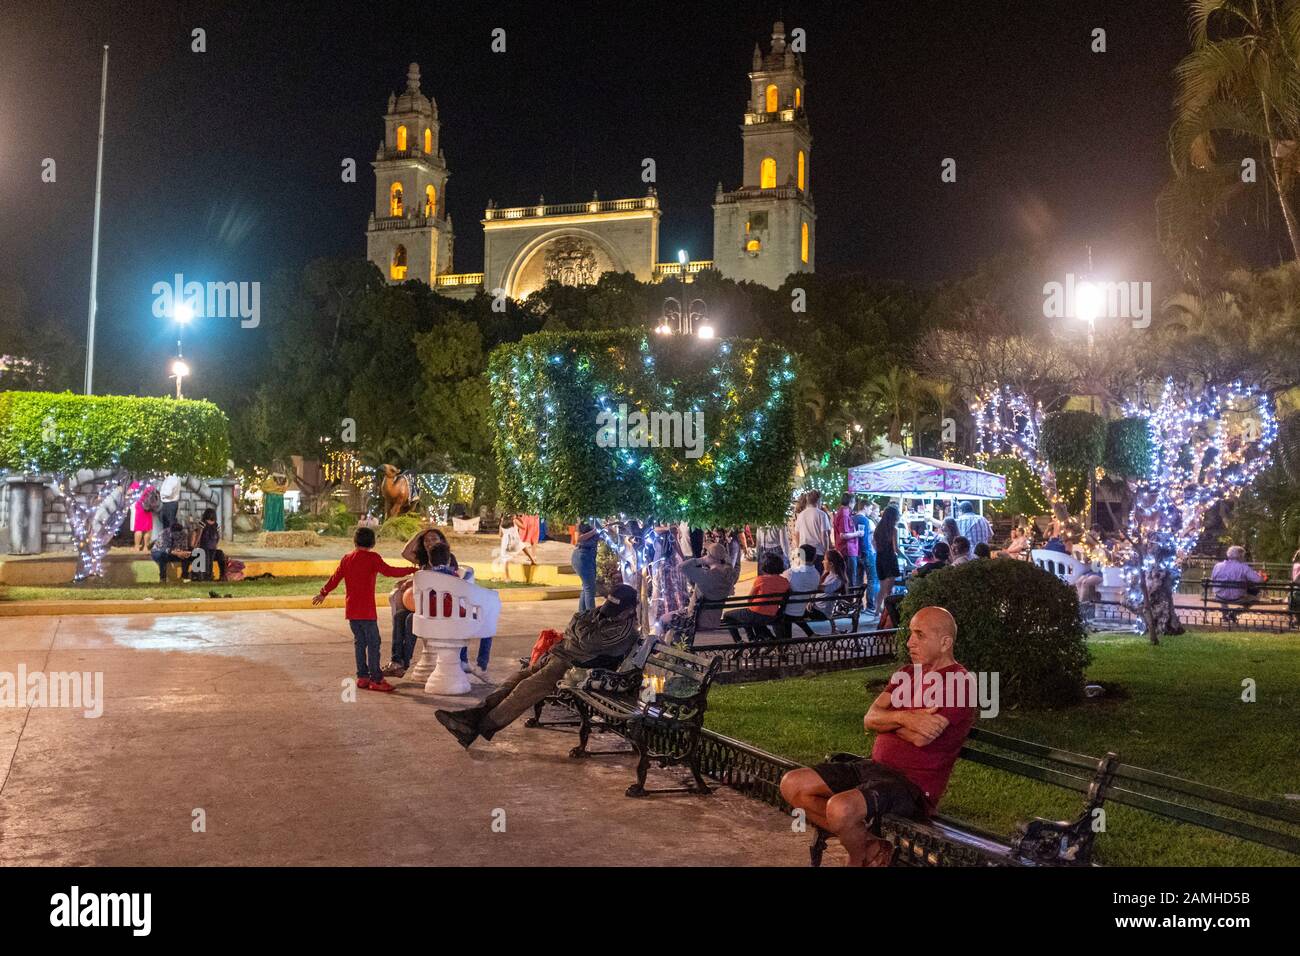 Plaza de la Independencia, Merida, Mexico Stock Photo